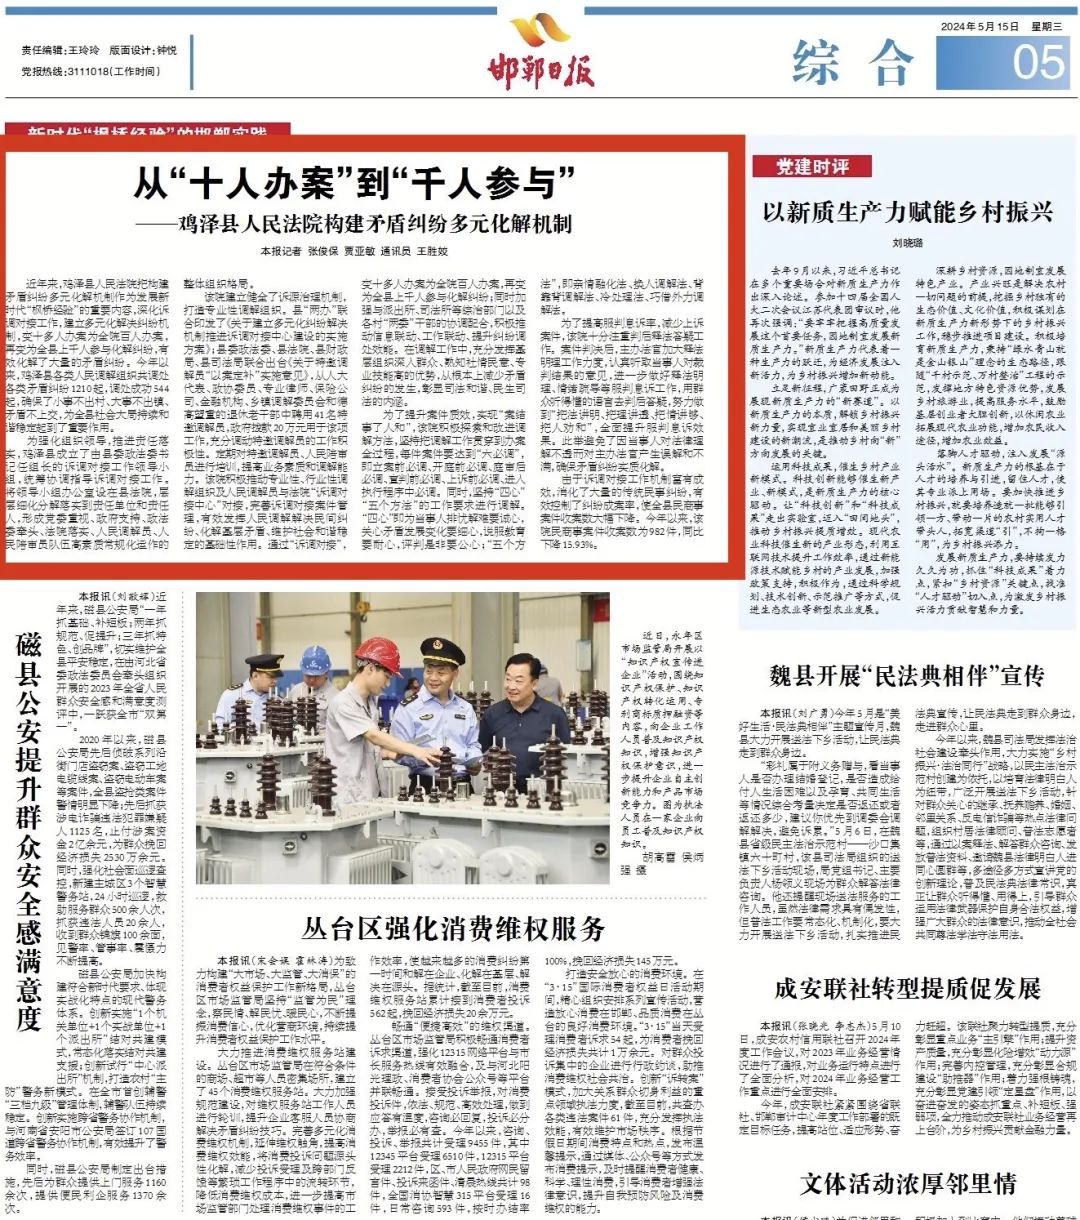 5月15日,《邯郸日报》以从十人办案到千人参与——鸡泽县人民法院